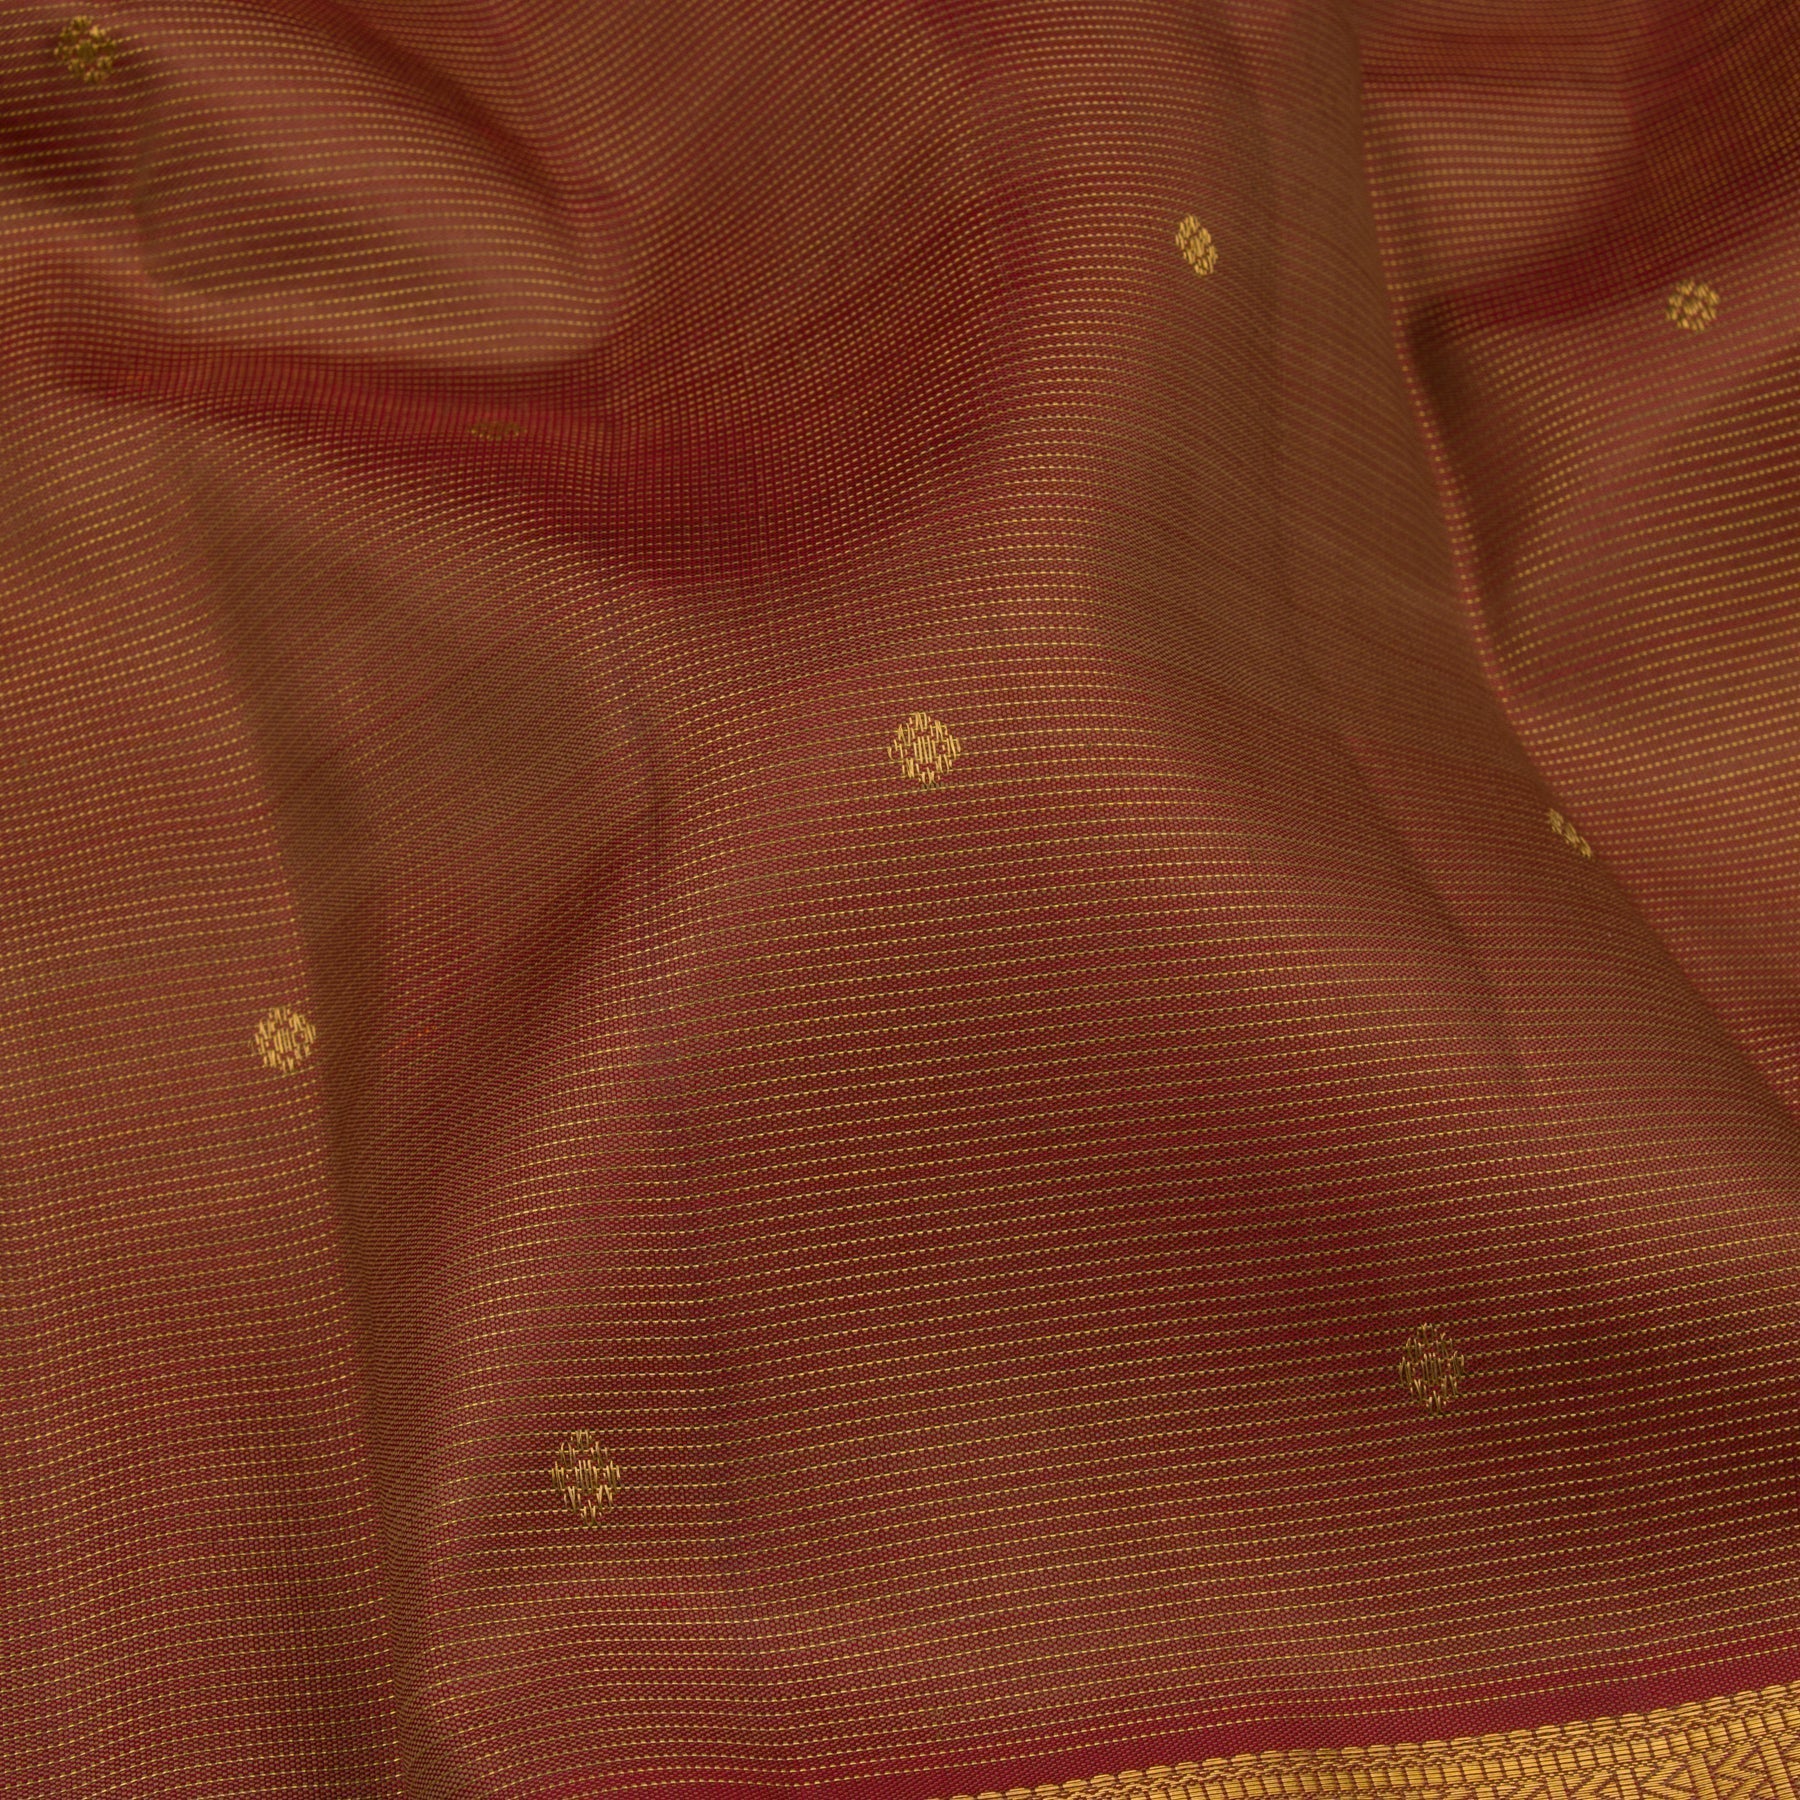 Kanakavalli Kanjivaram Silk Sari 22-599-HS001-03891 - Fabric View